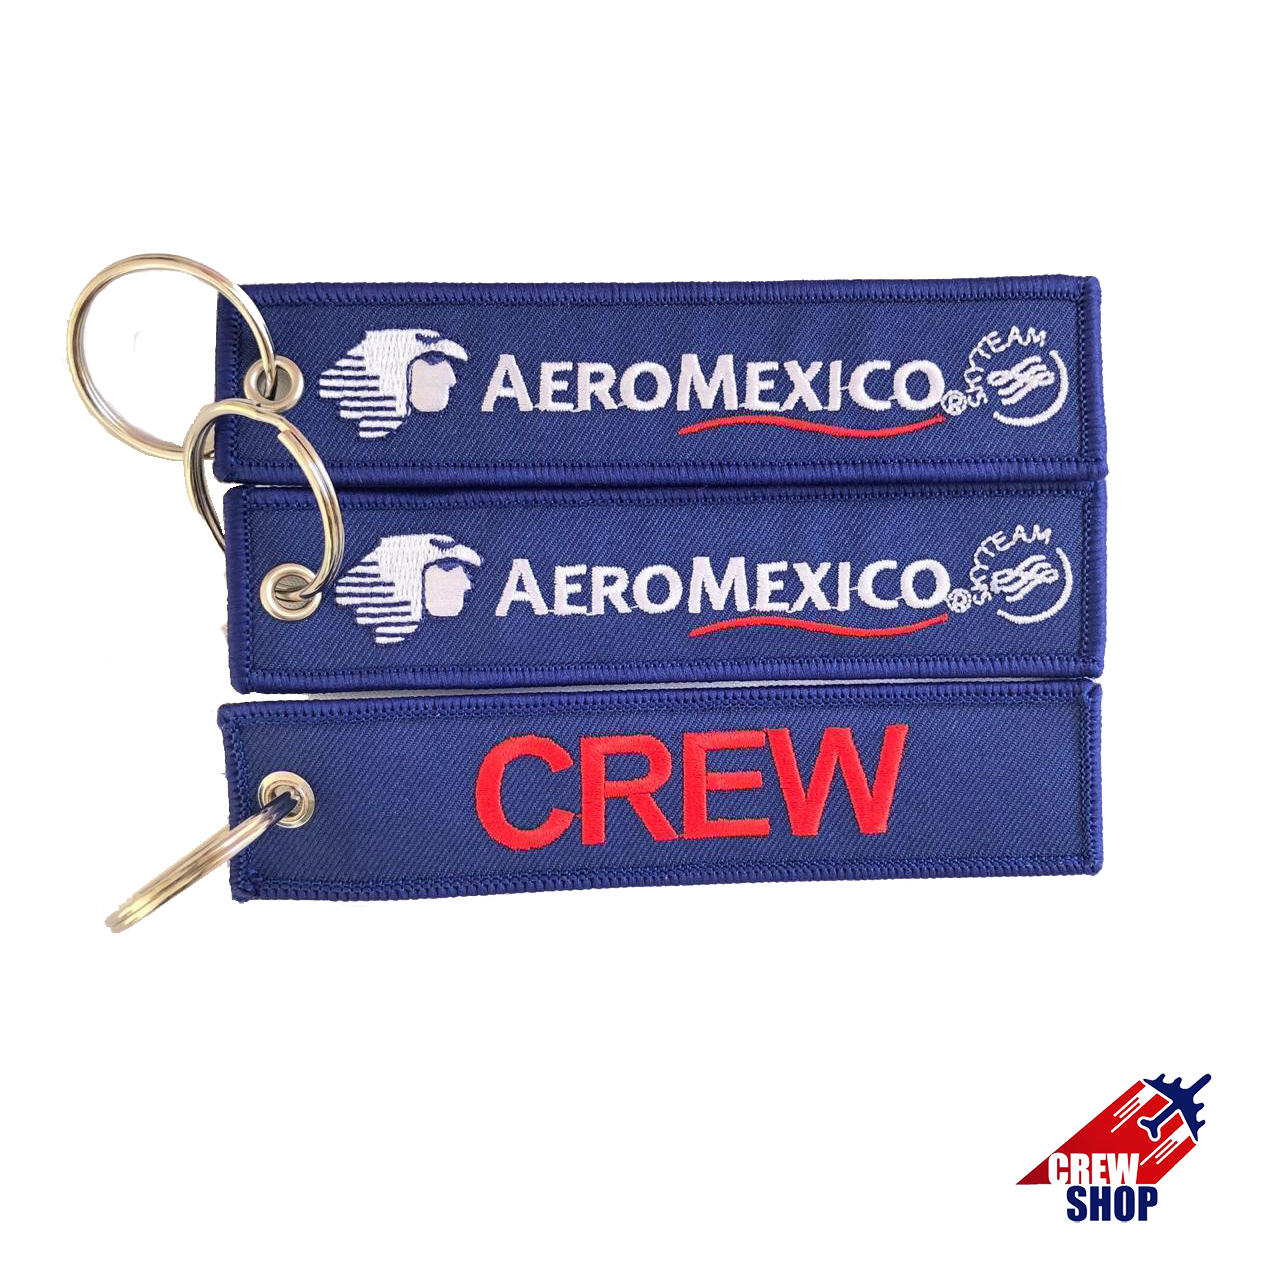 Aeromexico - CREW 